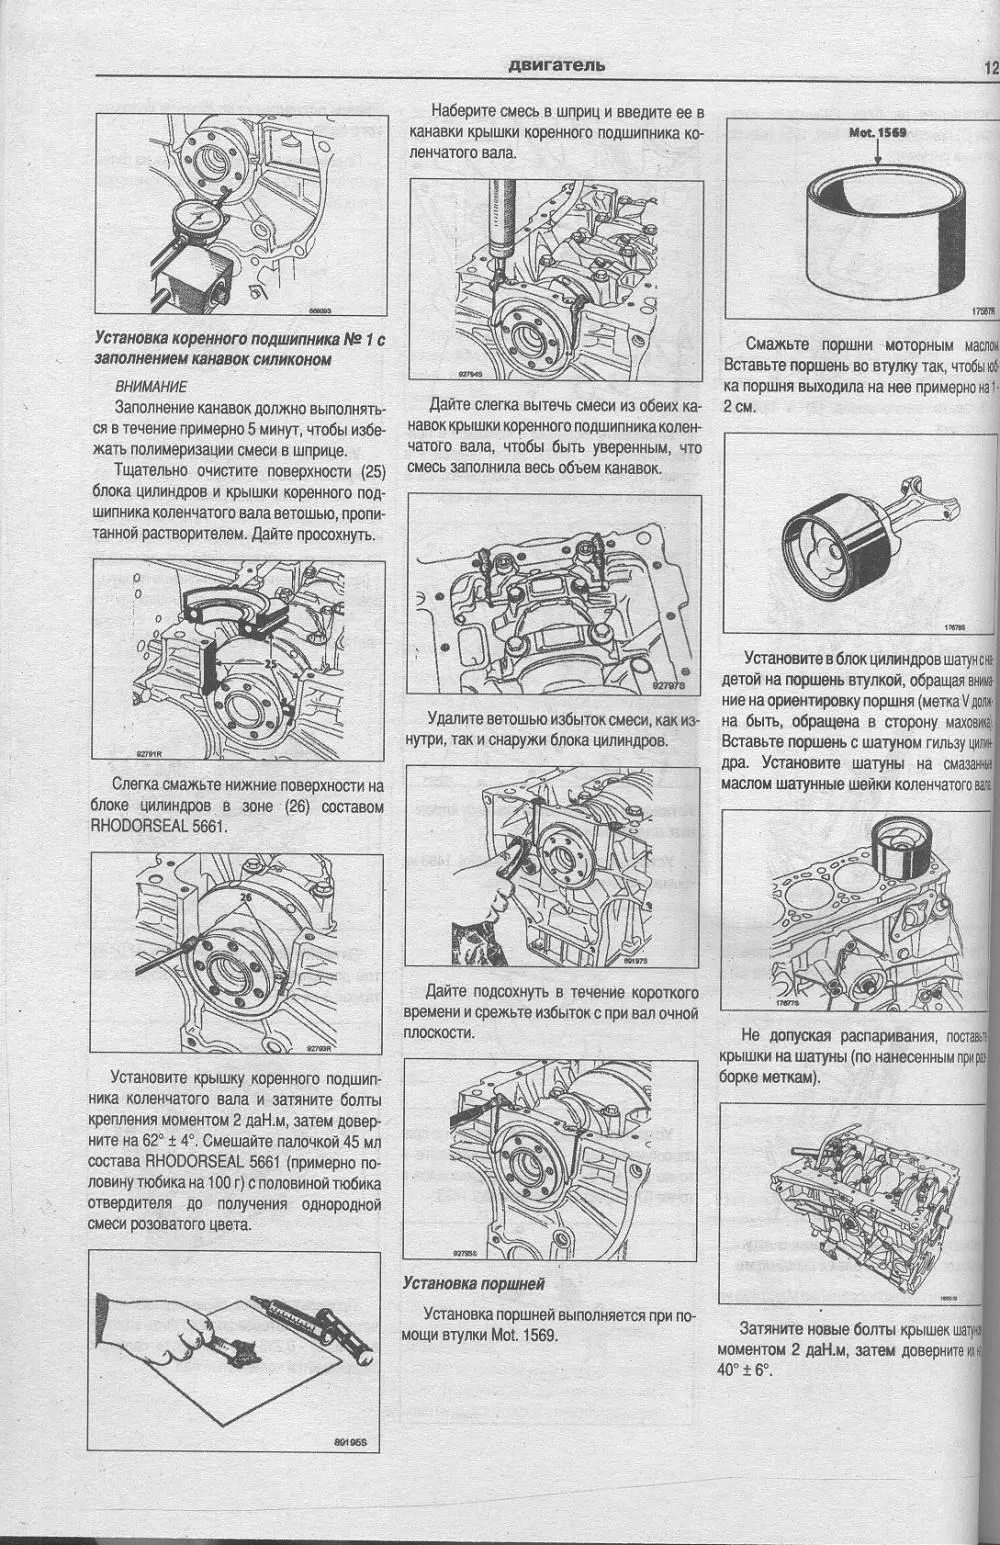 Книга Mitsubishi Carisma 1995-2004 бензин, дизель, электросхемы. Руководство по ремонту и эксплуатации автомобиля. Атласы автомобилей